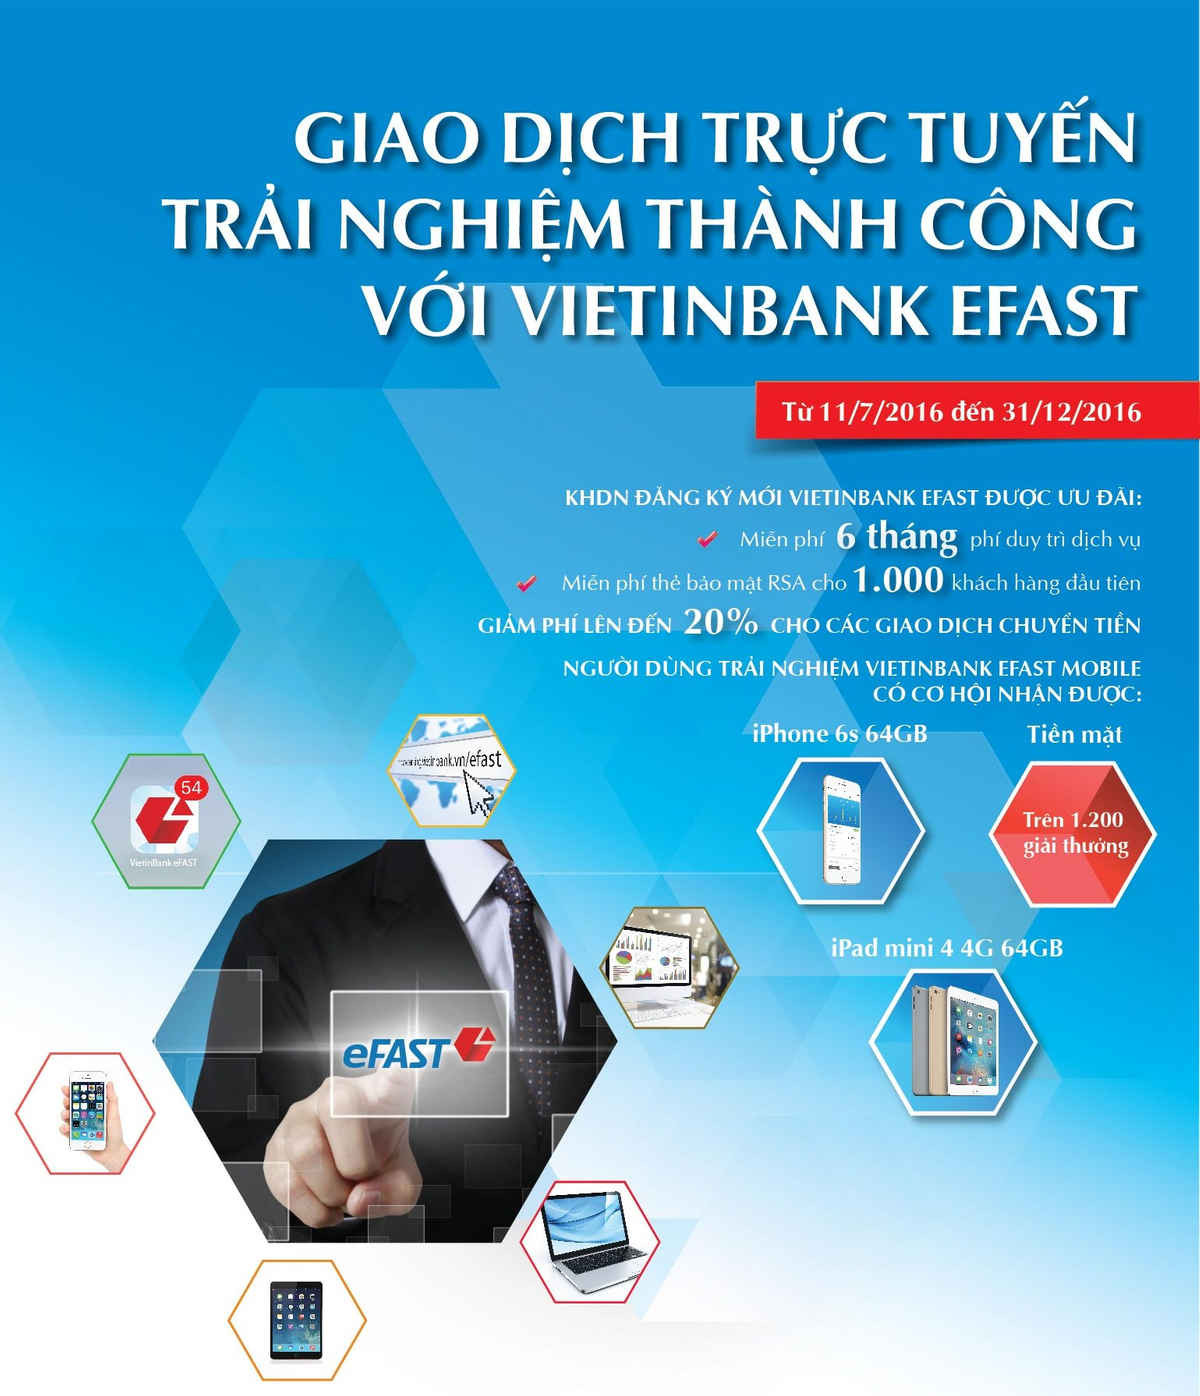 Sử dụng VietinBank eFAST, khách hàng được miễn phí dịch vụ 6 tháng và có cơ hội trúng nhiều phần quà hấp dẫn.